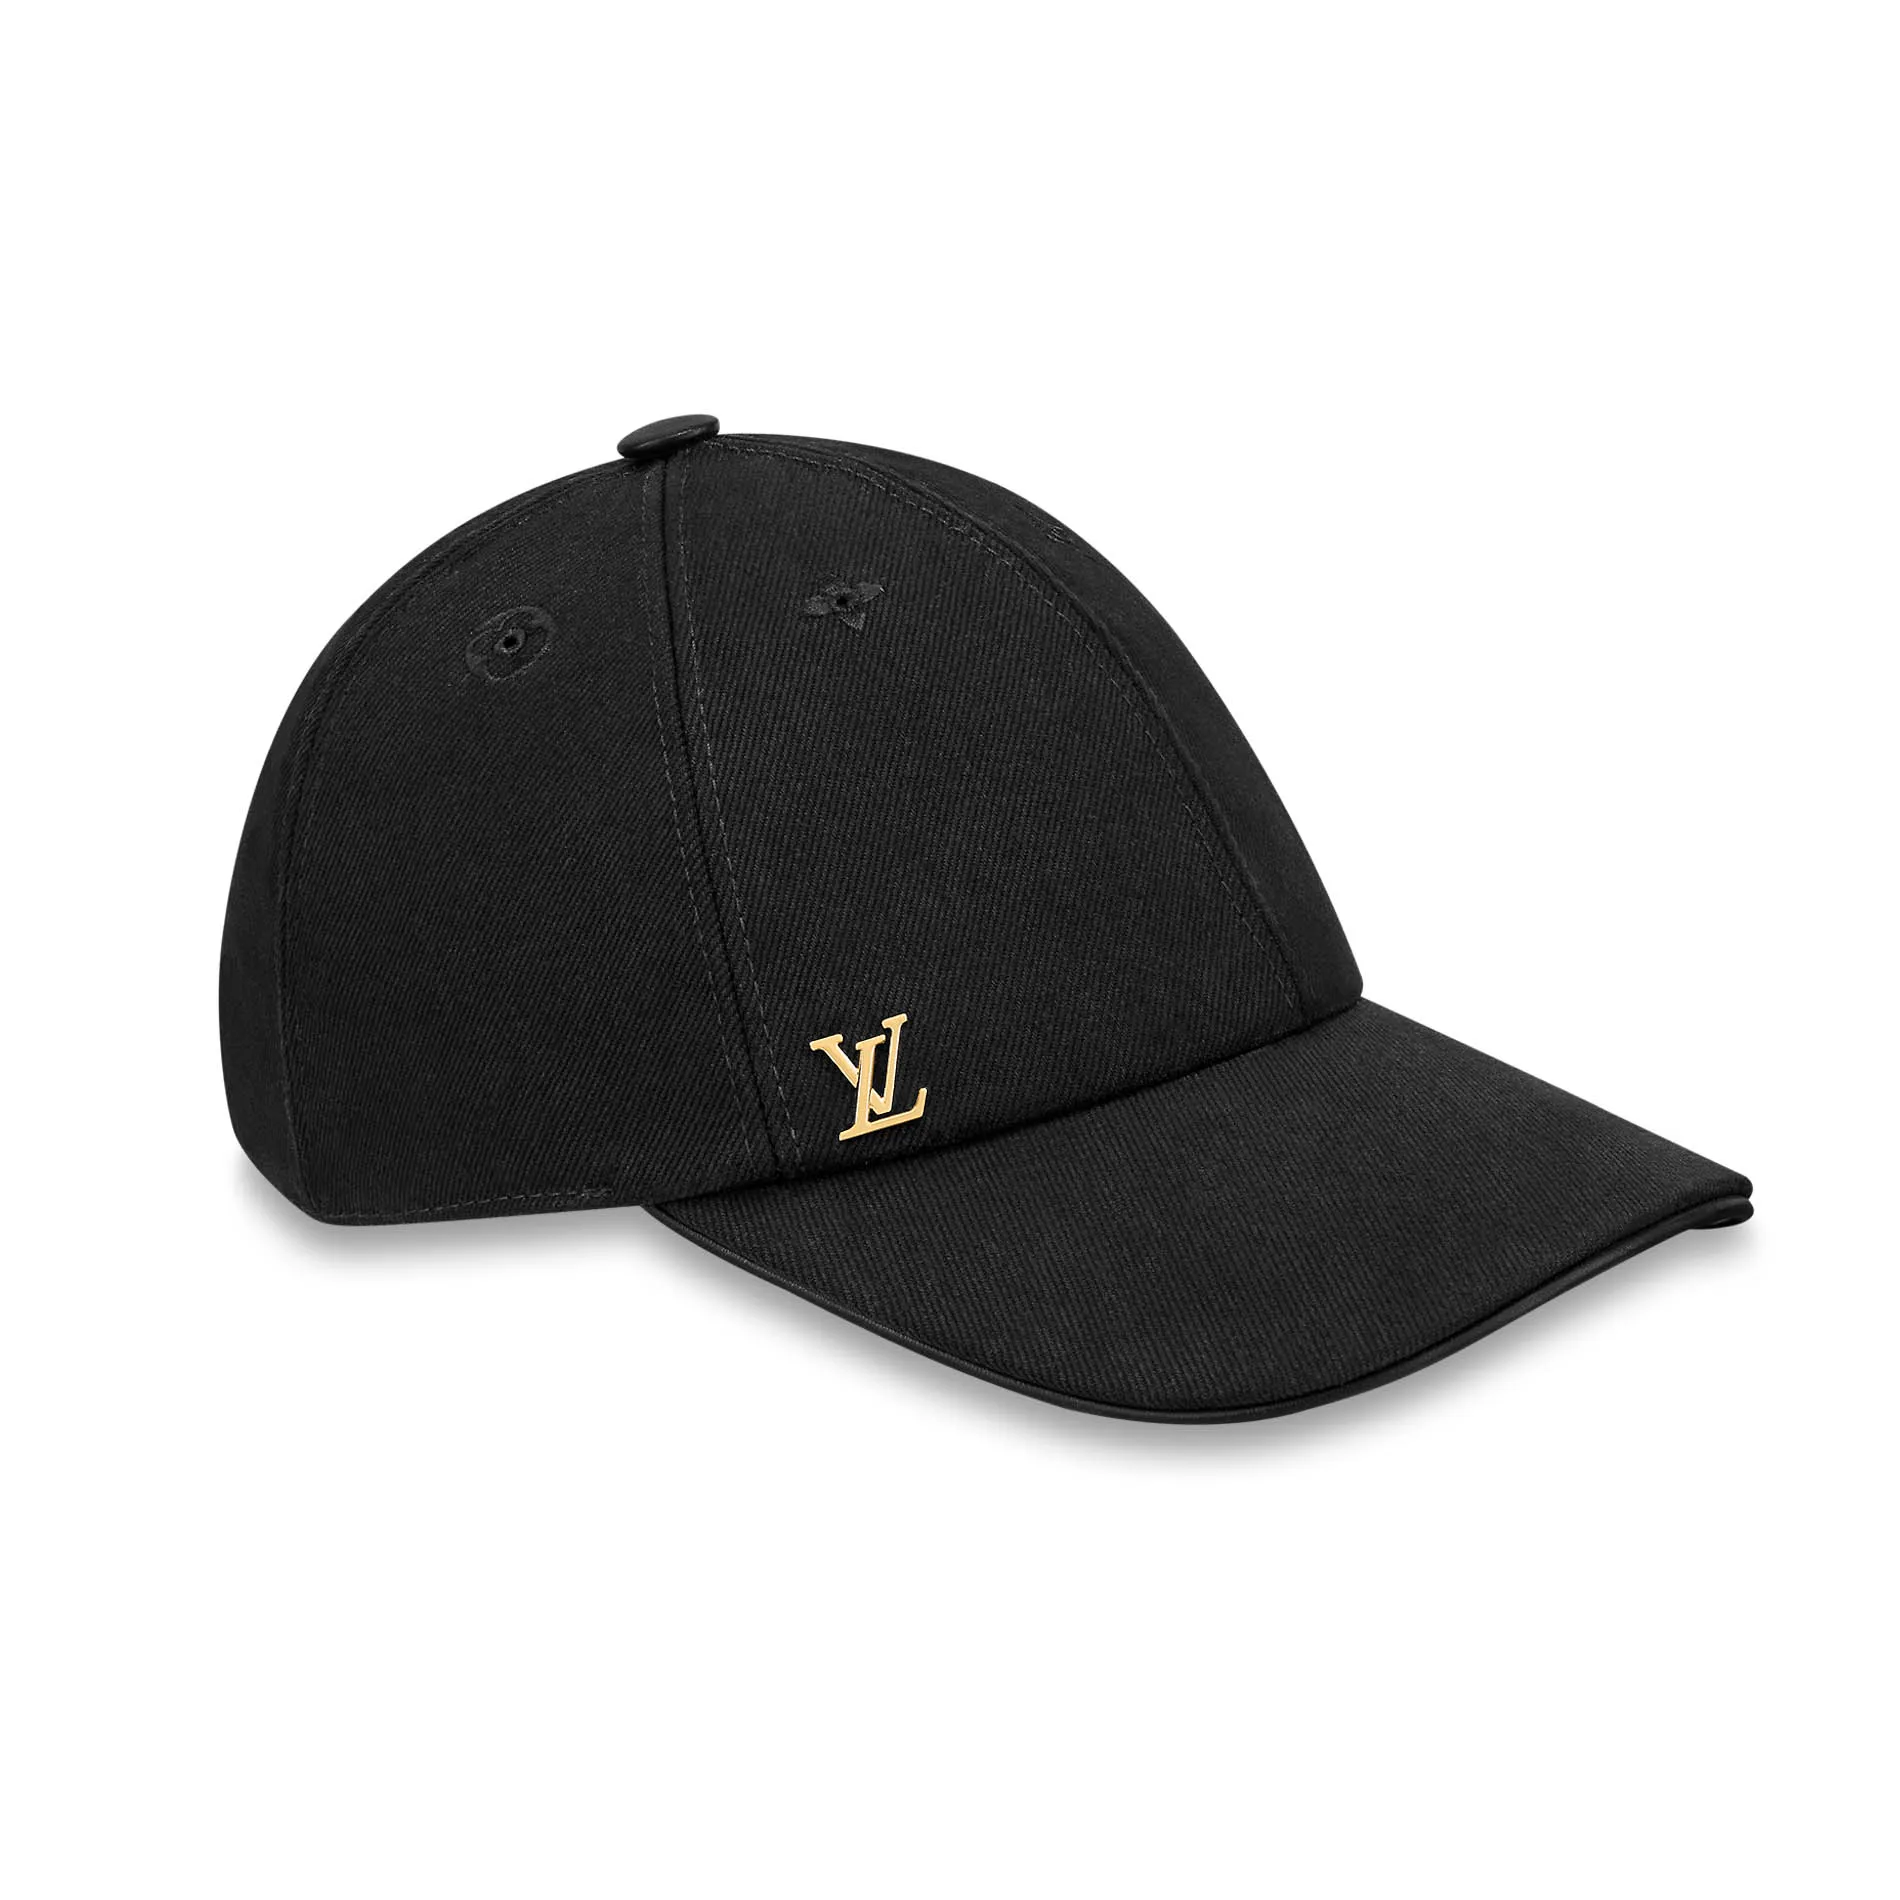 Mũ nam Louis Vuitton họa tiết logo đính đá MNLV03 siêu cấp like auth 99   HOANG NGUYEN STORE